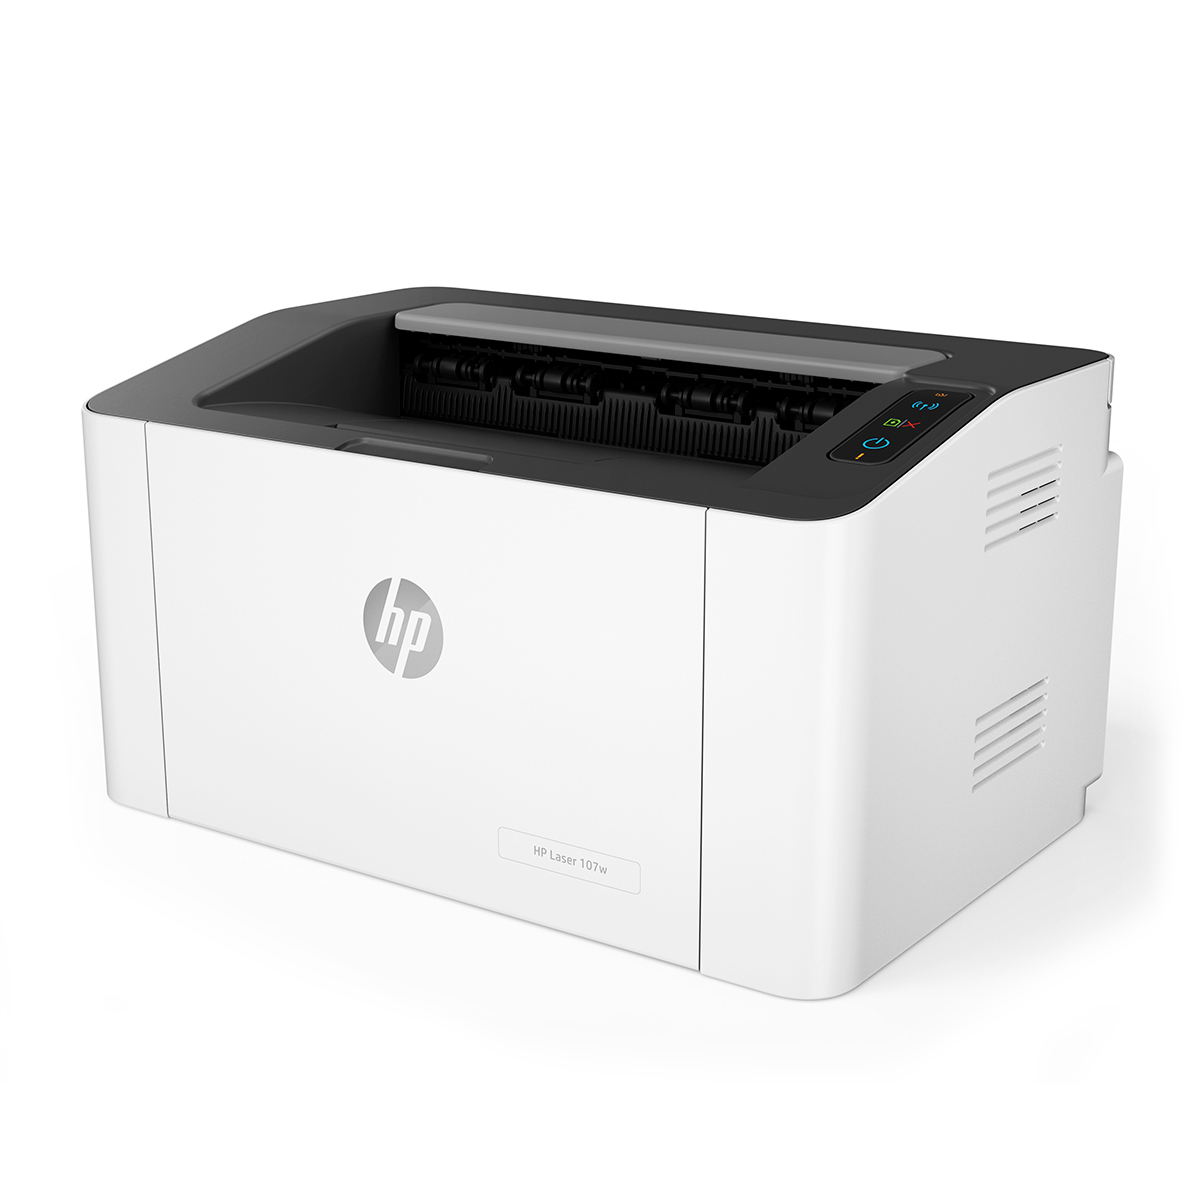 Impresora láser HP blanco y negro | HP-107W - 918081 - Electrónica